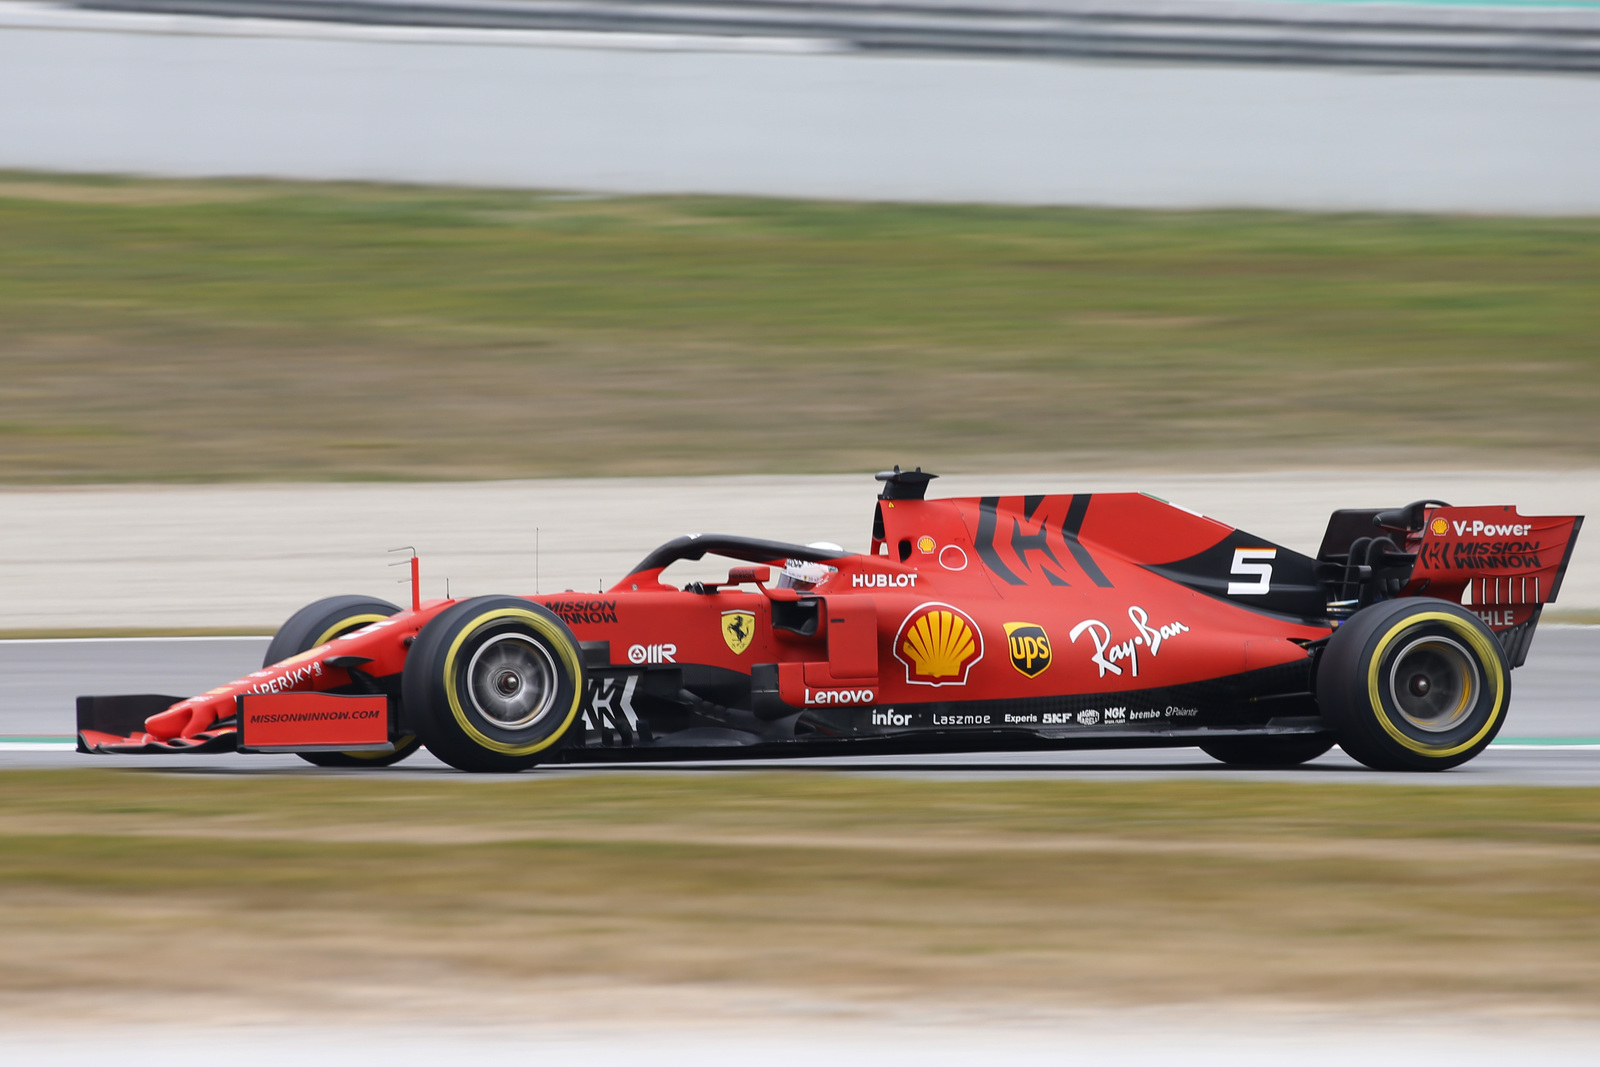 El piloto alemán de Ferrari, Sebastian Vettel, buscará su quinto campeonato de la Fórmula Uno; ganó del 2010 a 2013.